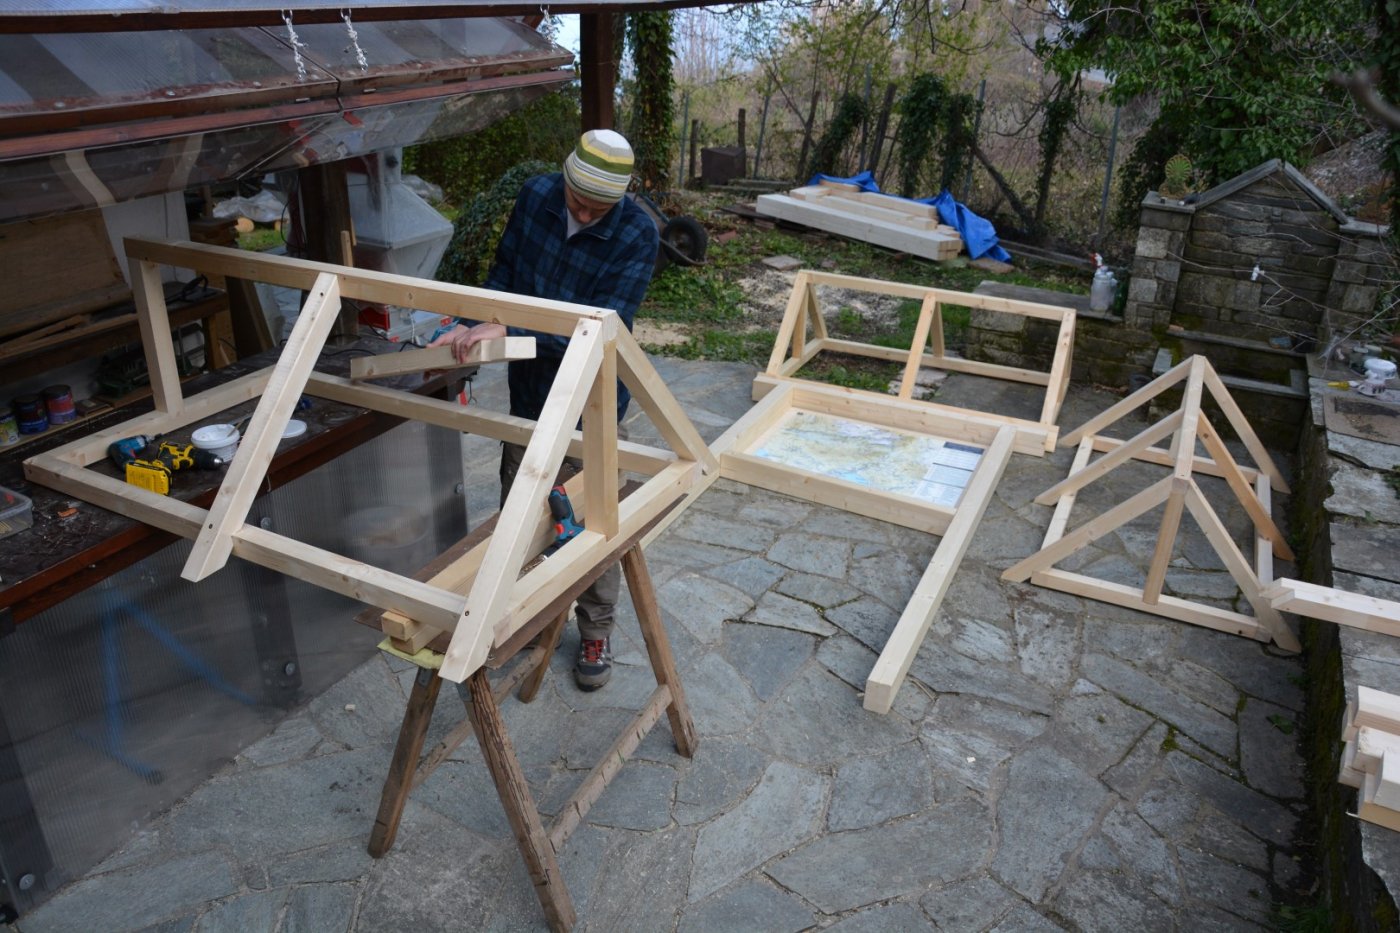 Handmade wooden structors